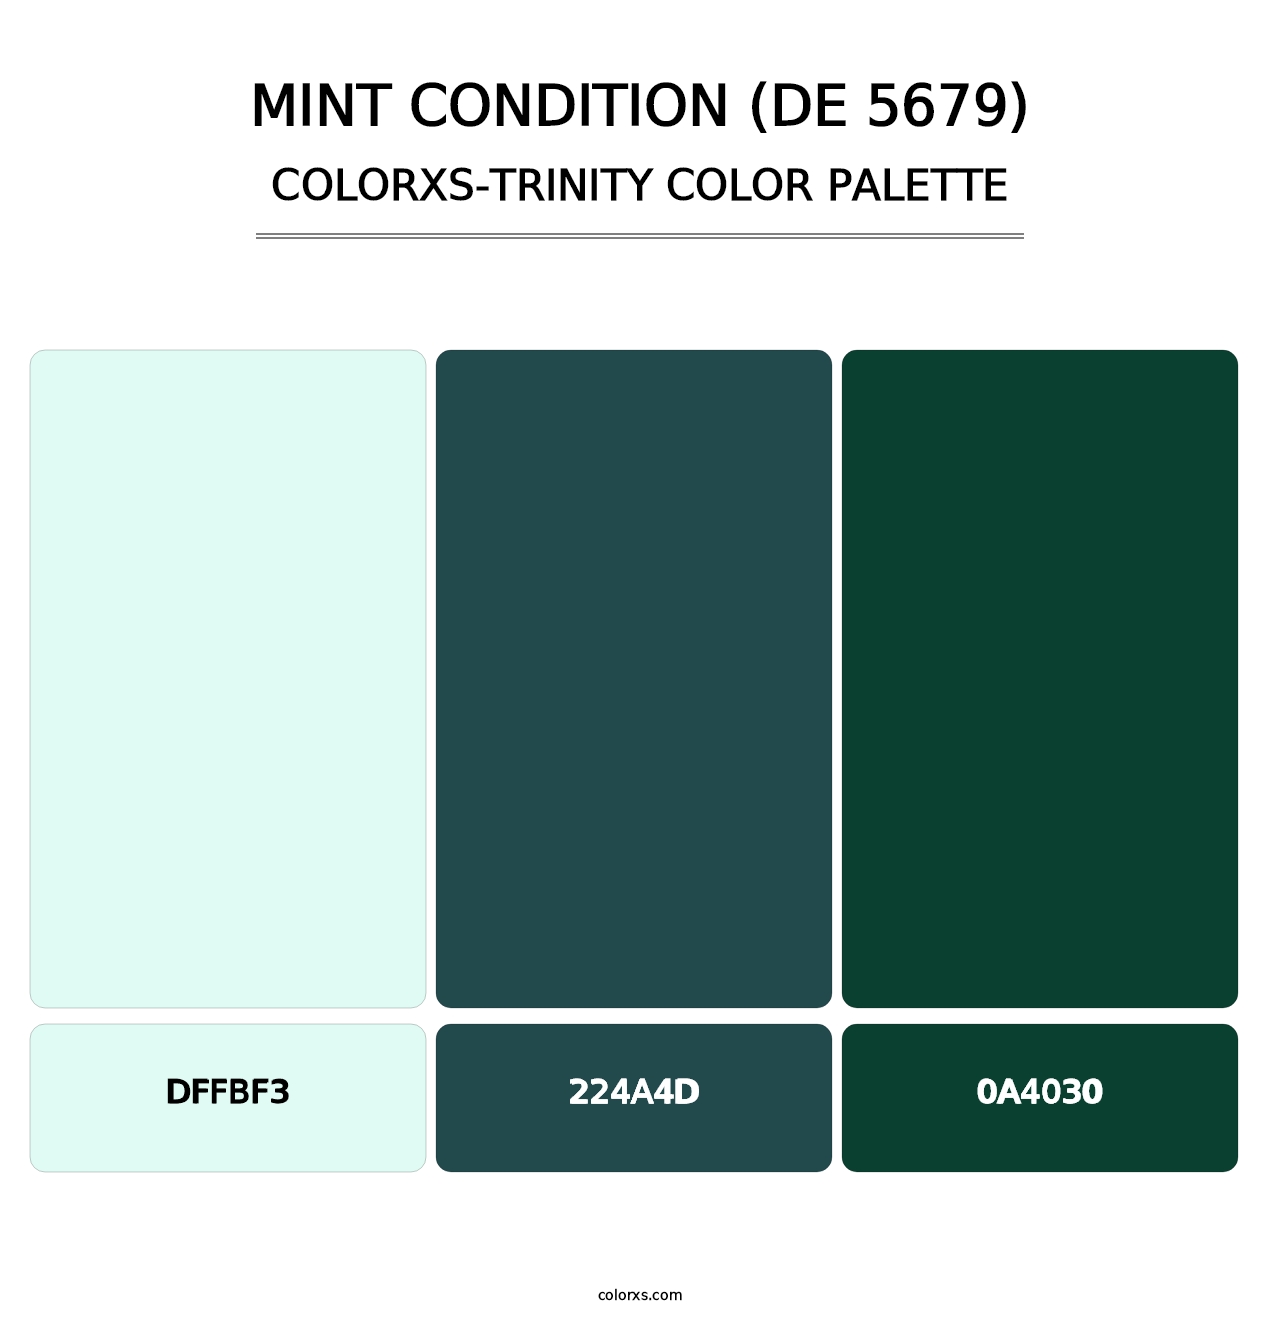 Mint Condition (DE 5679) - Colorxs Trinity Palette